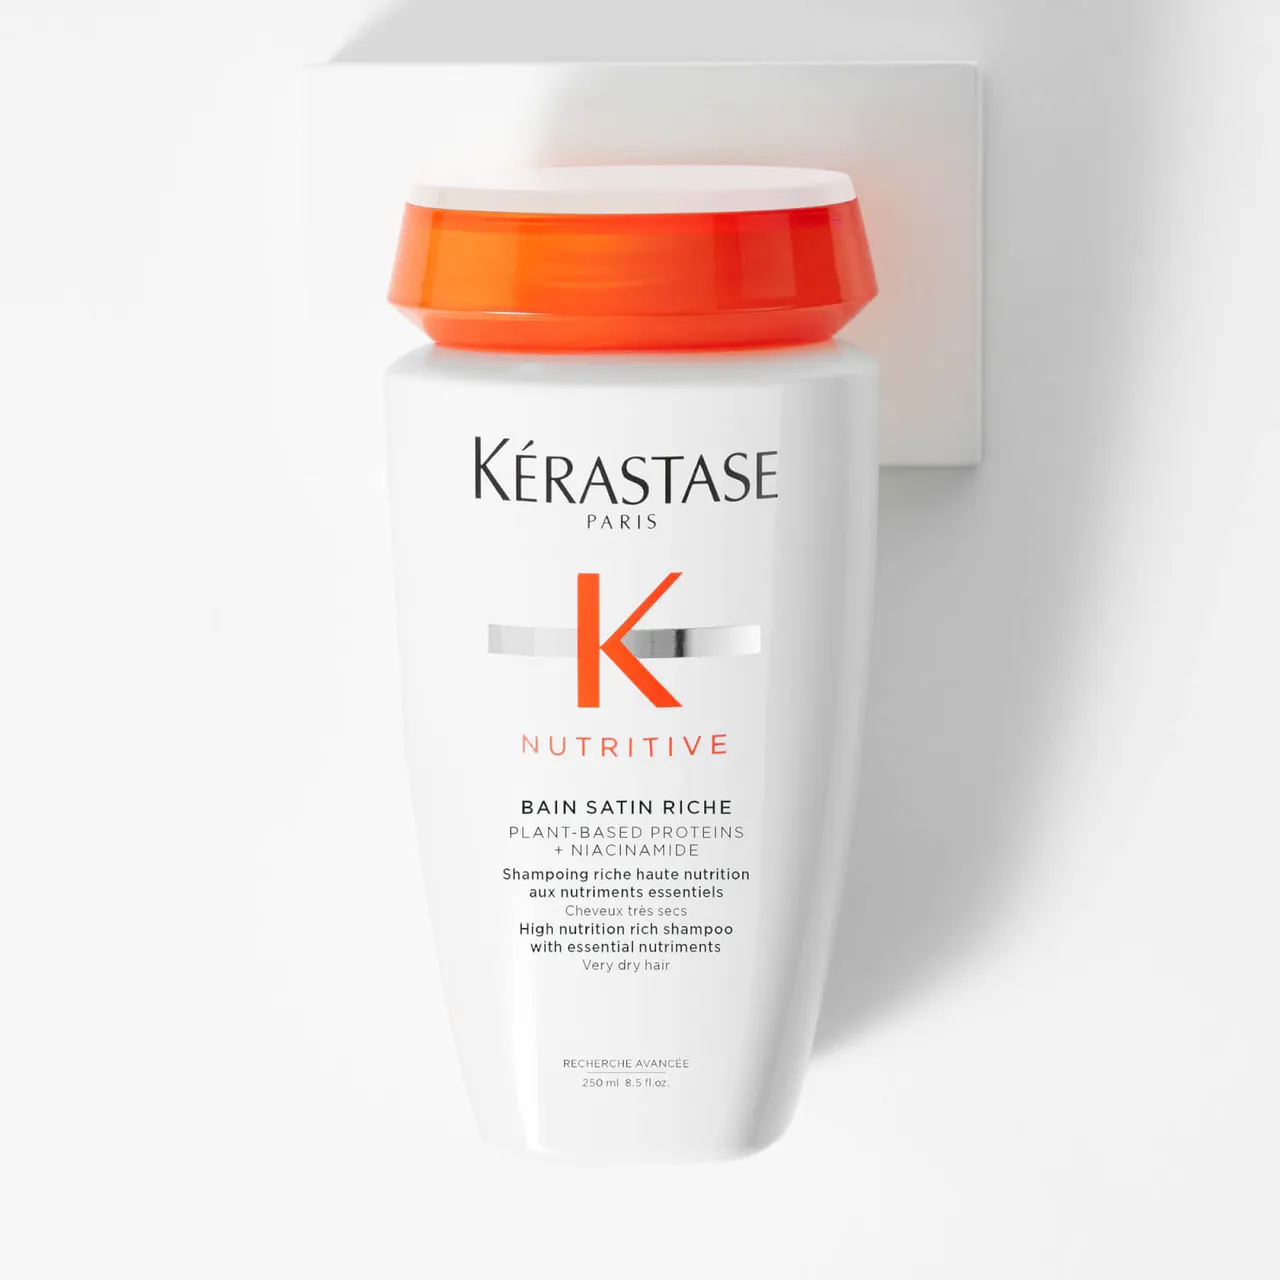 Kérastase Nutritive Bain Satin Riche High Nutrition Rich Shampoo for Very Dry Hair 250ml